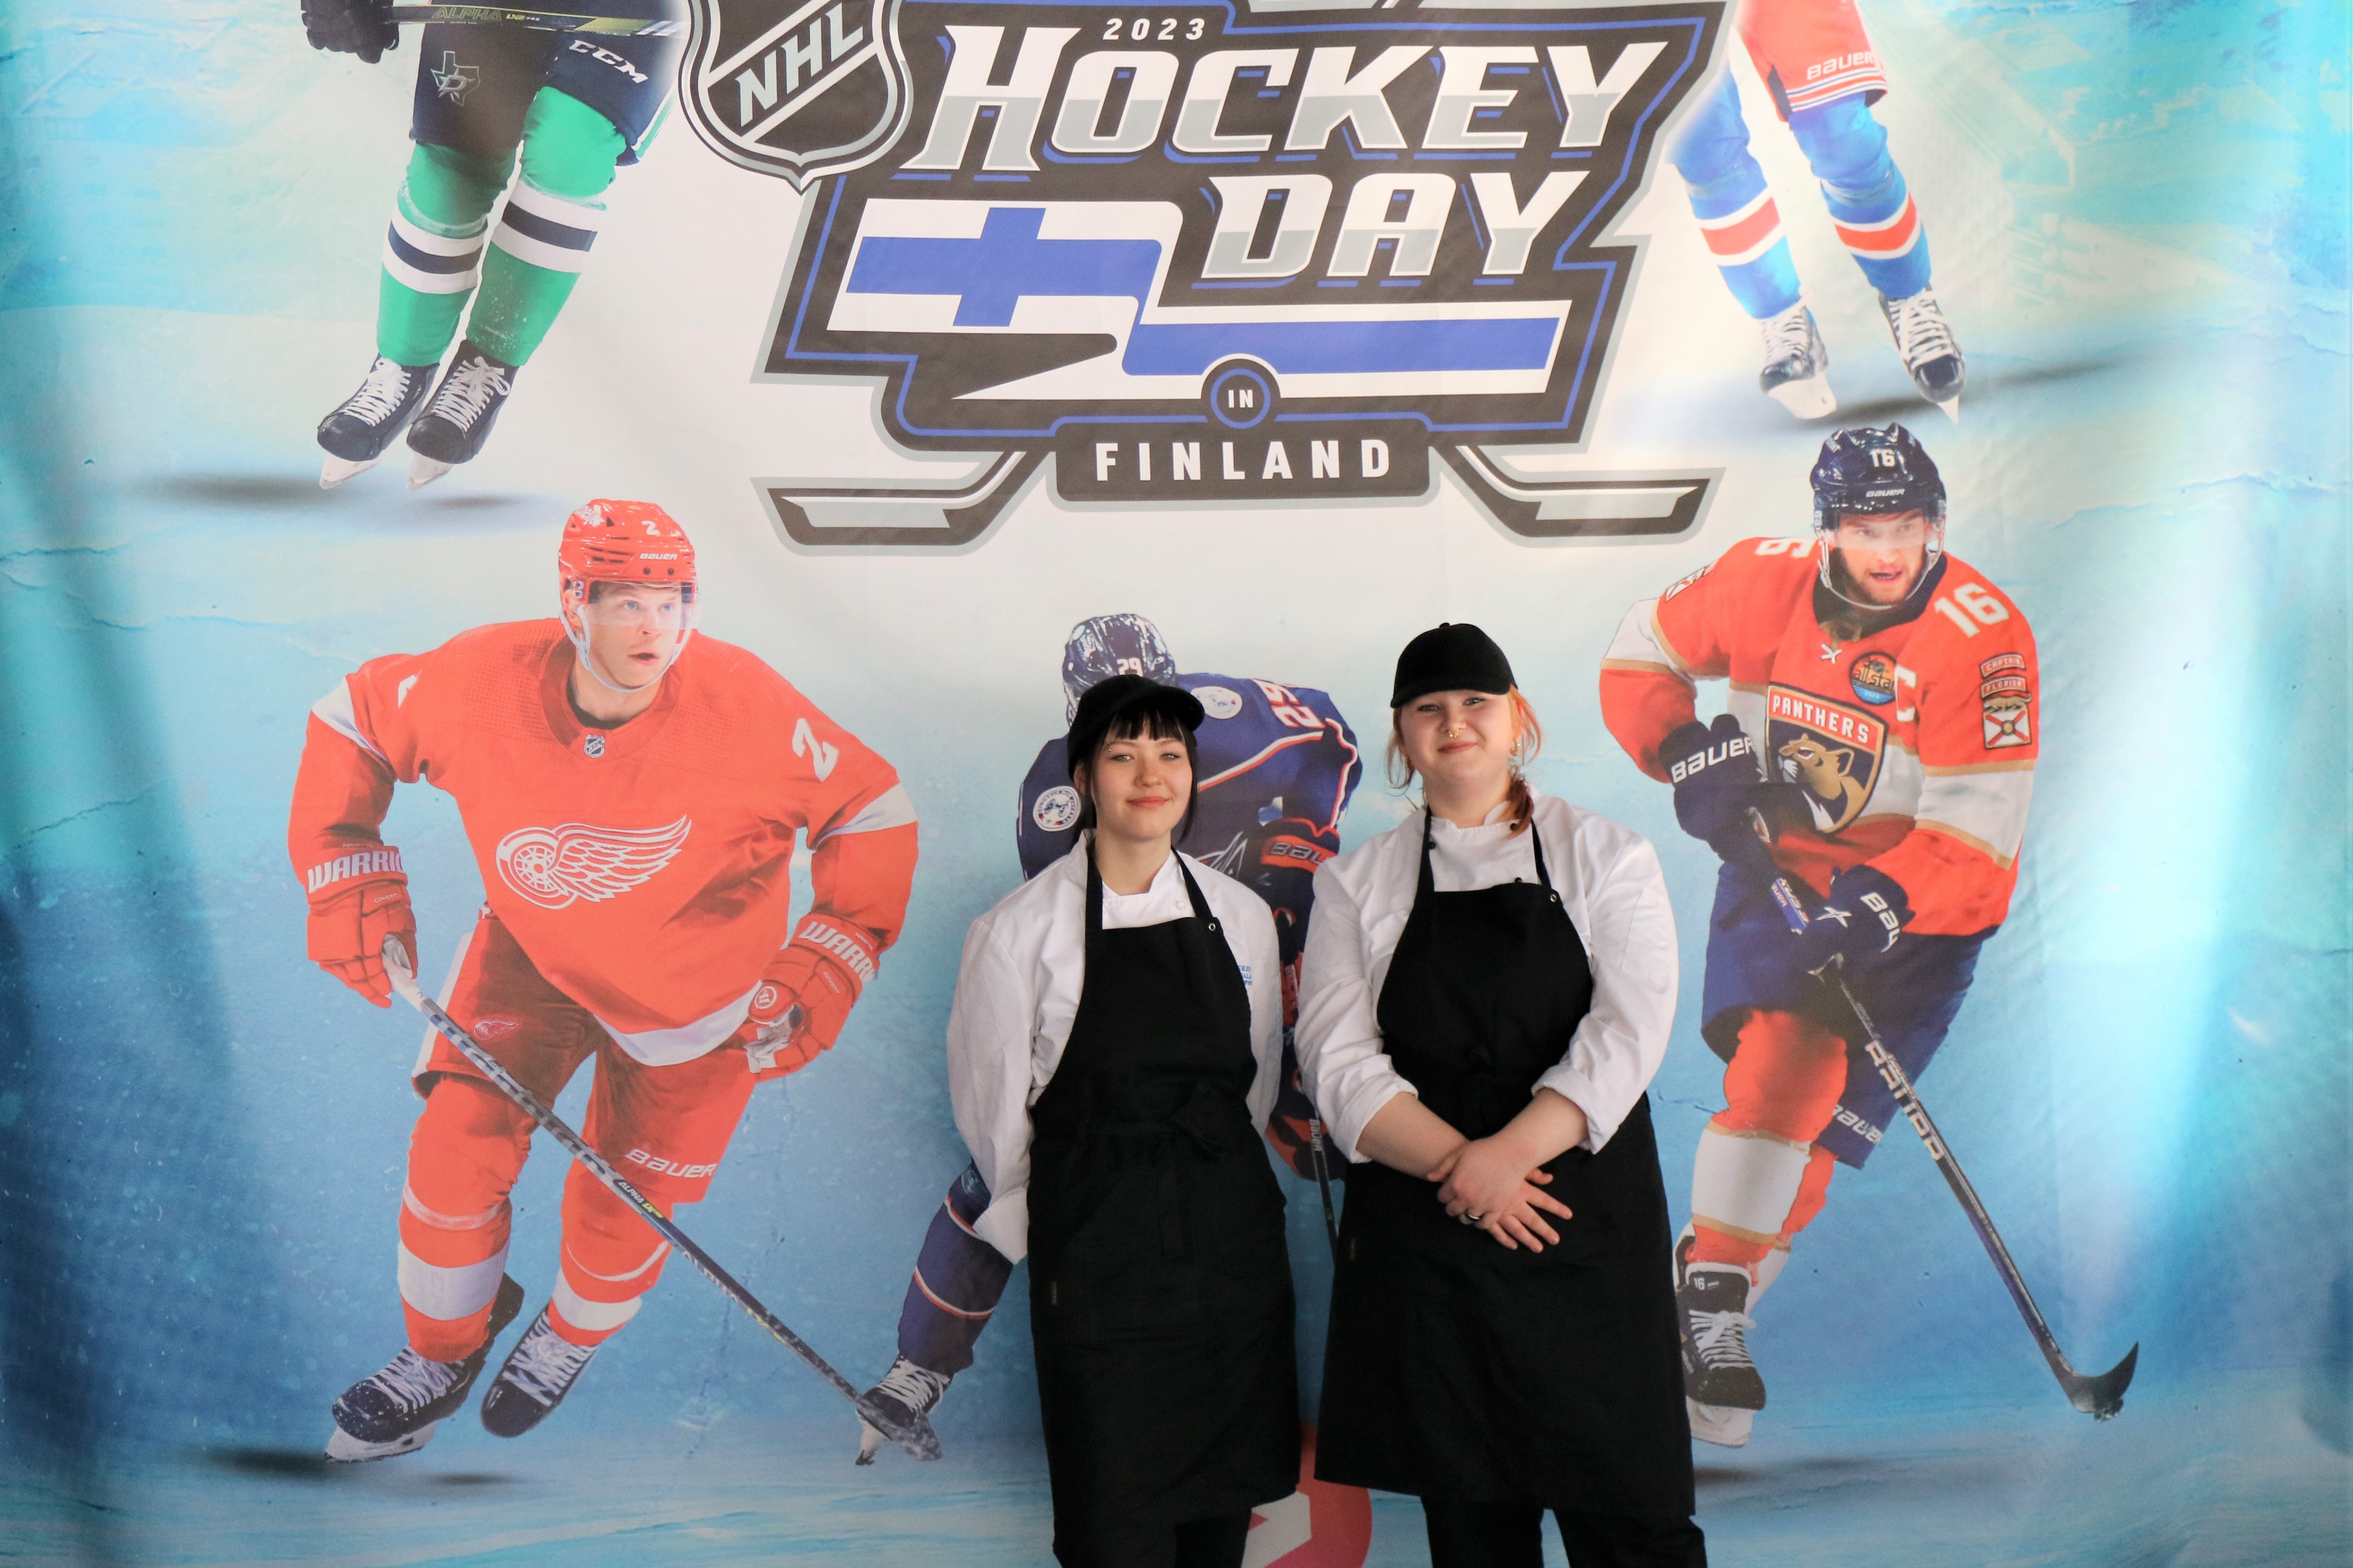 Kuvassa Hockey Day -tausta jossa tapahtuman otsikko sekä kuvia jääkiekkoilijoista. Etualalla Milo ja Tuulia yllään mustat essut.